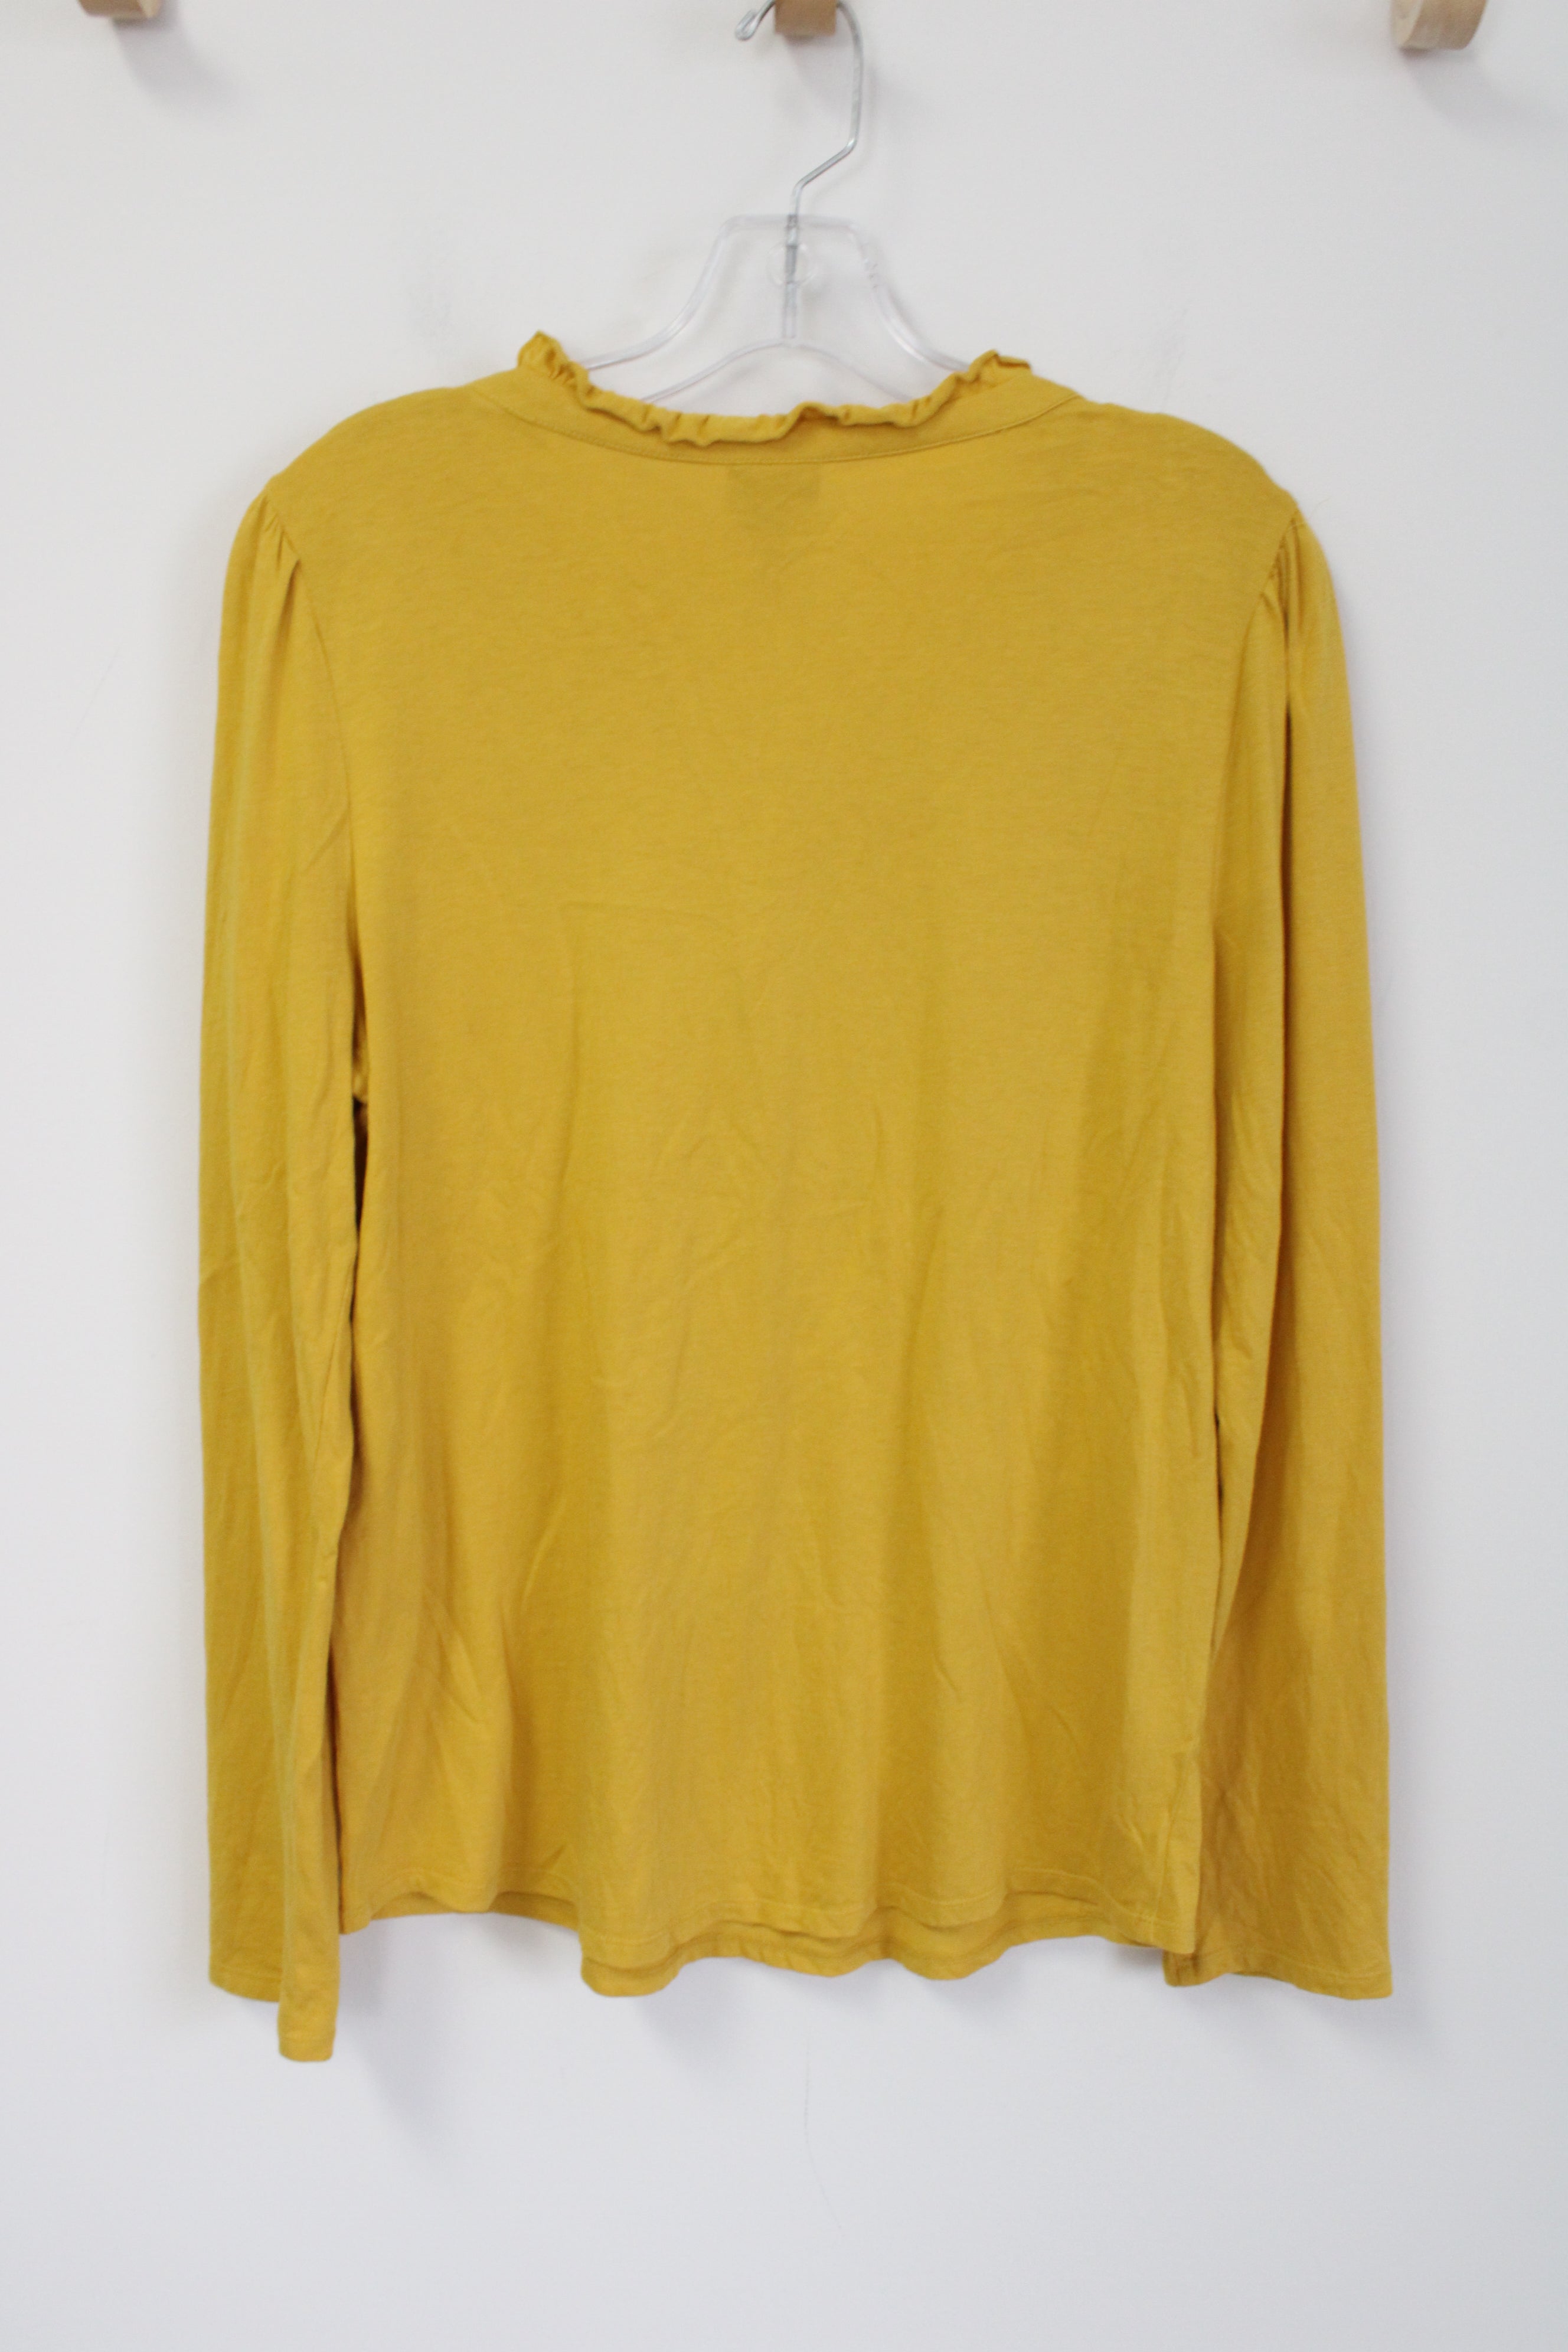 Chico's Mustard Yellow Long Sleeved Shirt | 1 (M/8)